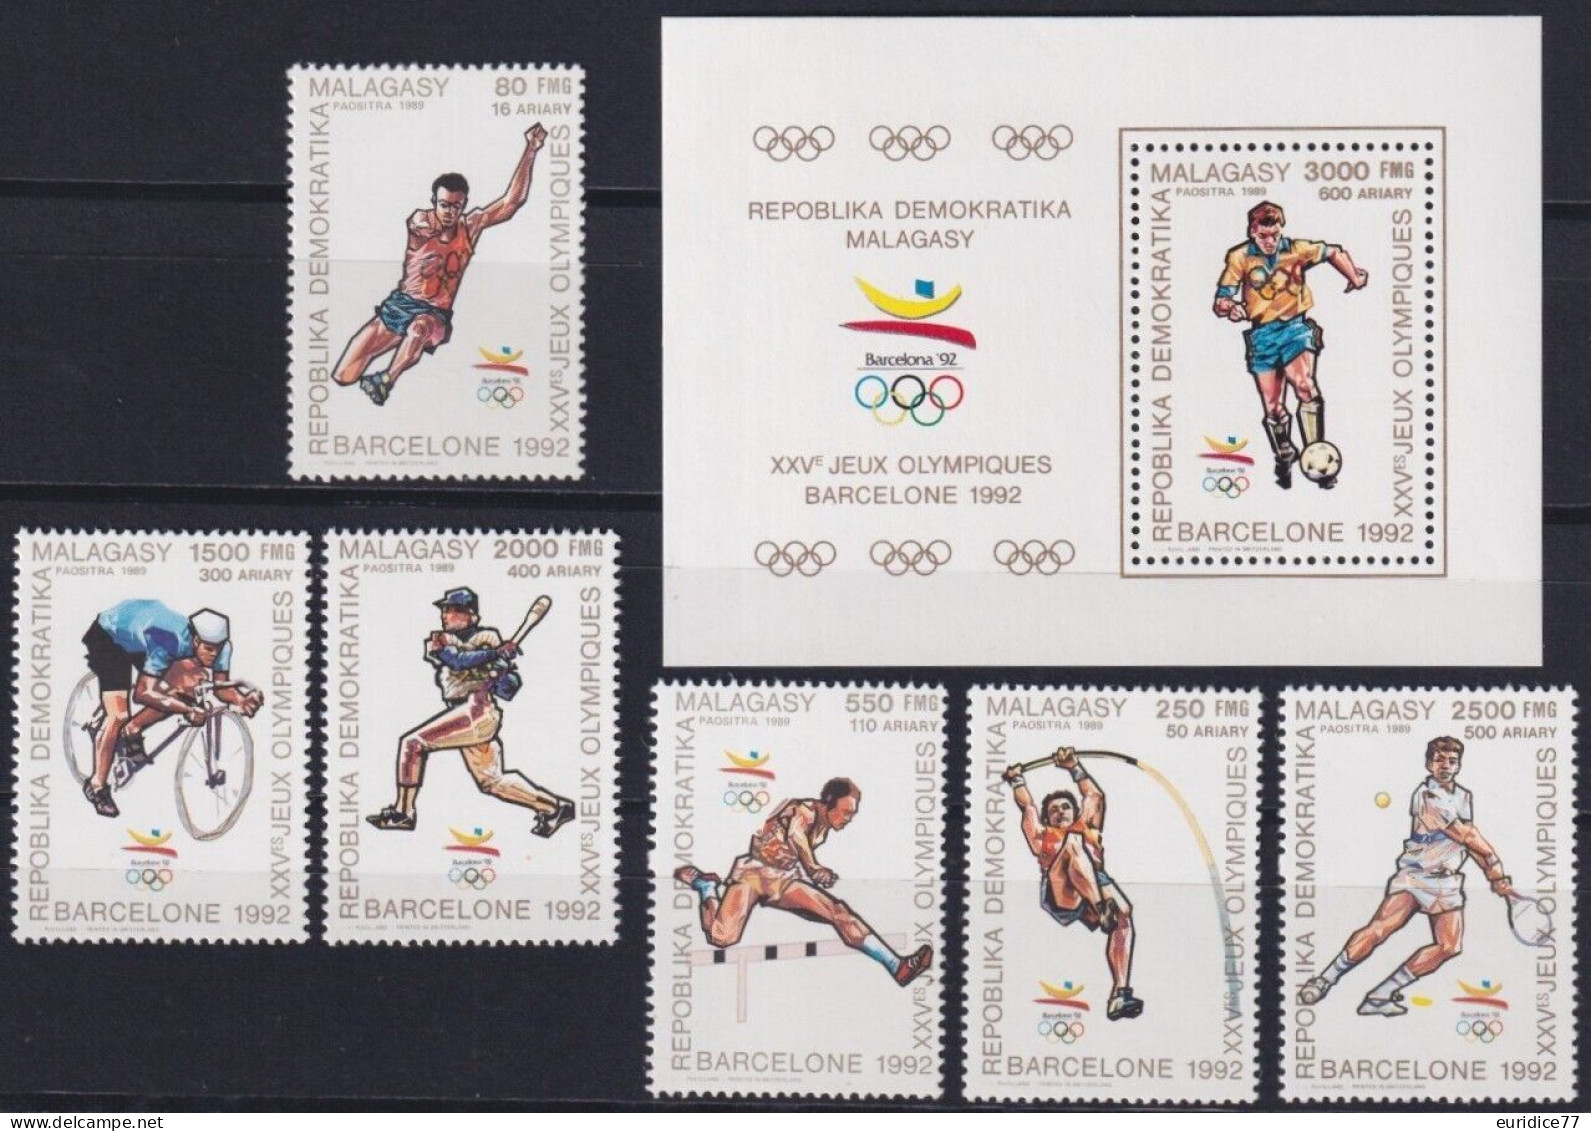 Madagascar 1989 - Olympic Games Barcelona 92 Yvert Mnh** - Sommer 1992: Barcelone